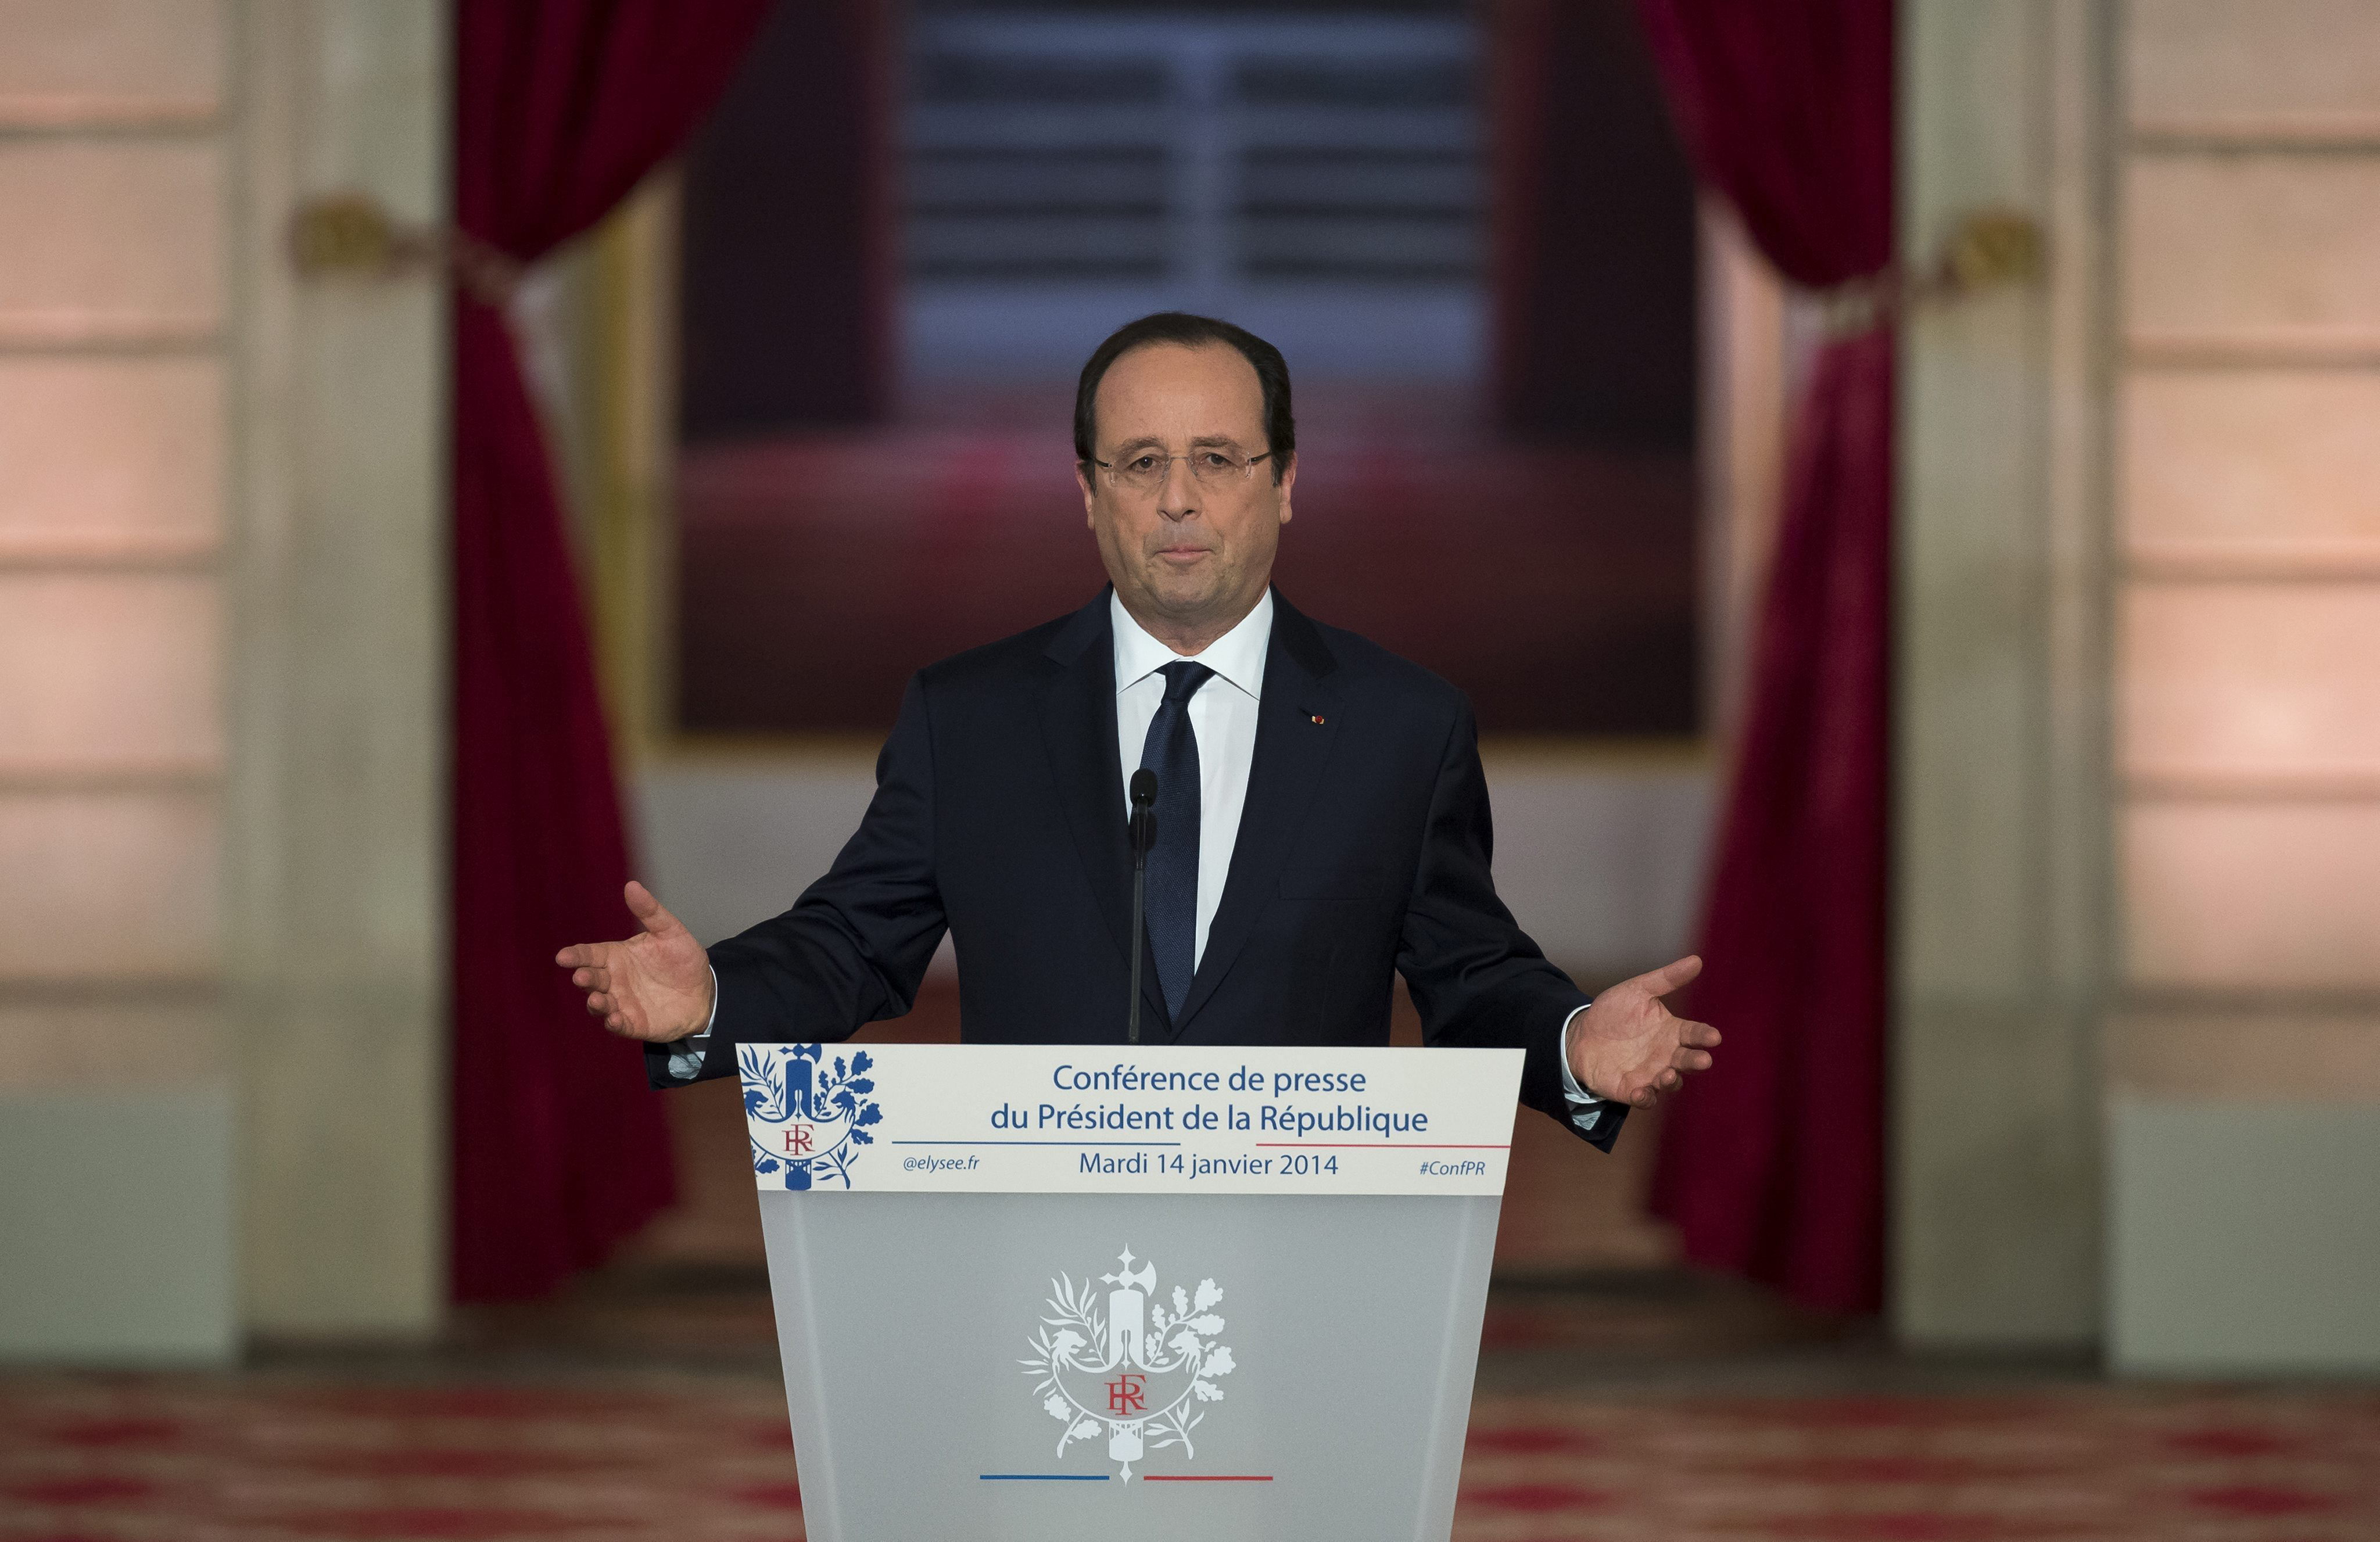 Europa ve con muy buenos ojos los anuncios económicos de Hollande